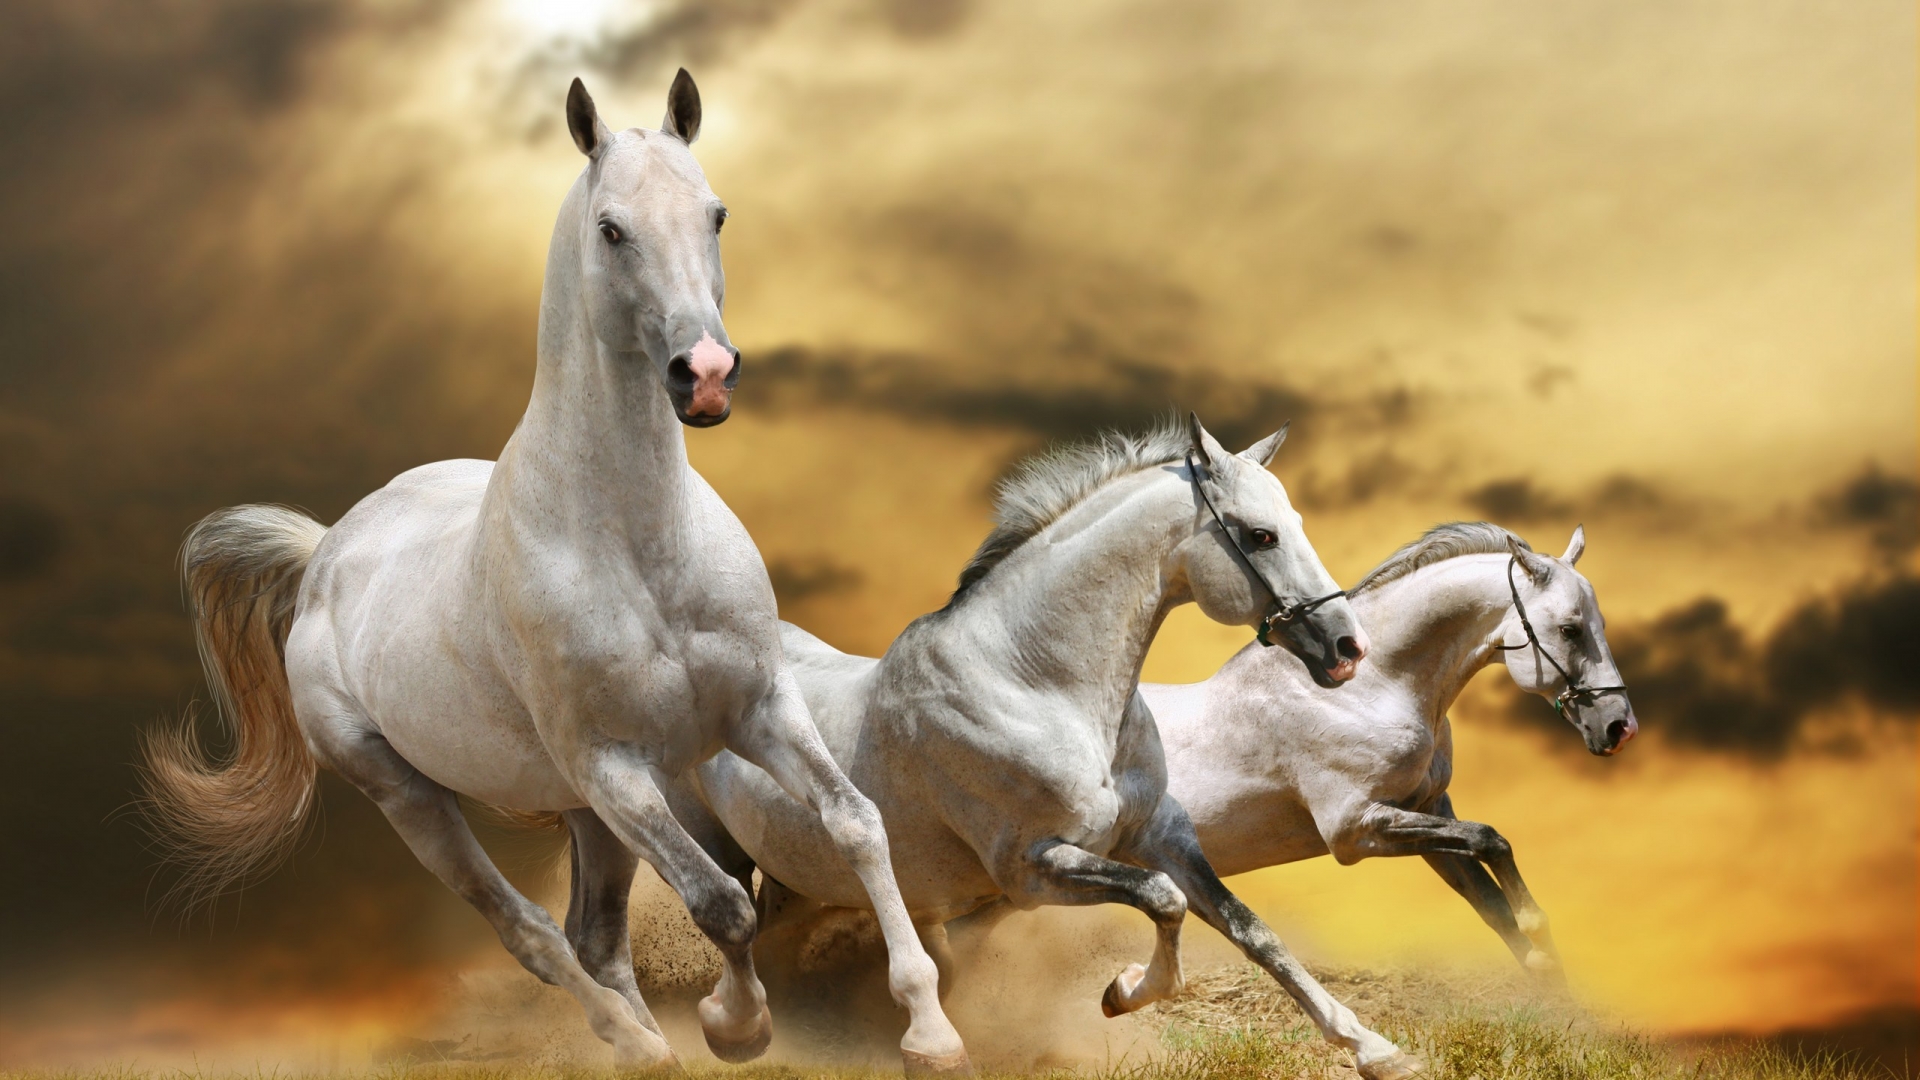 Wilde White Horses for 1920 x 1080 HDTV 1080p resolution